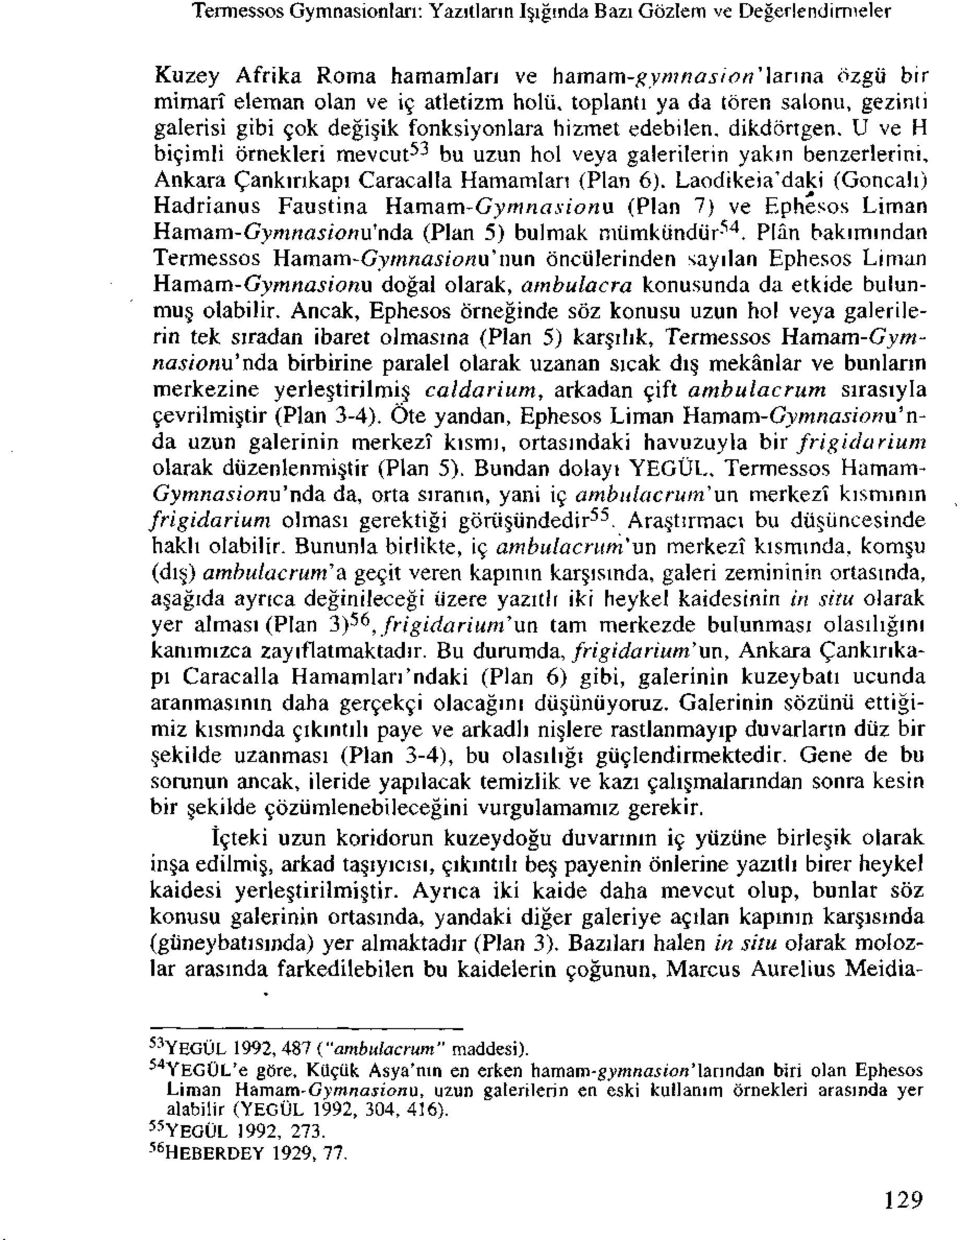 U ve H bicimli ornekleri mevcut 53 bu uzun hoi veya galerilerin yakm benzerlerini, Ankara Cankmkapi Caracalla Hamamlan (Plan 6).